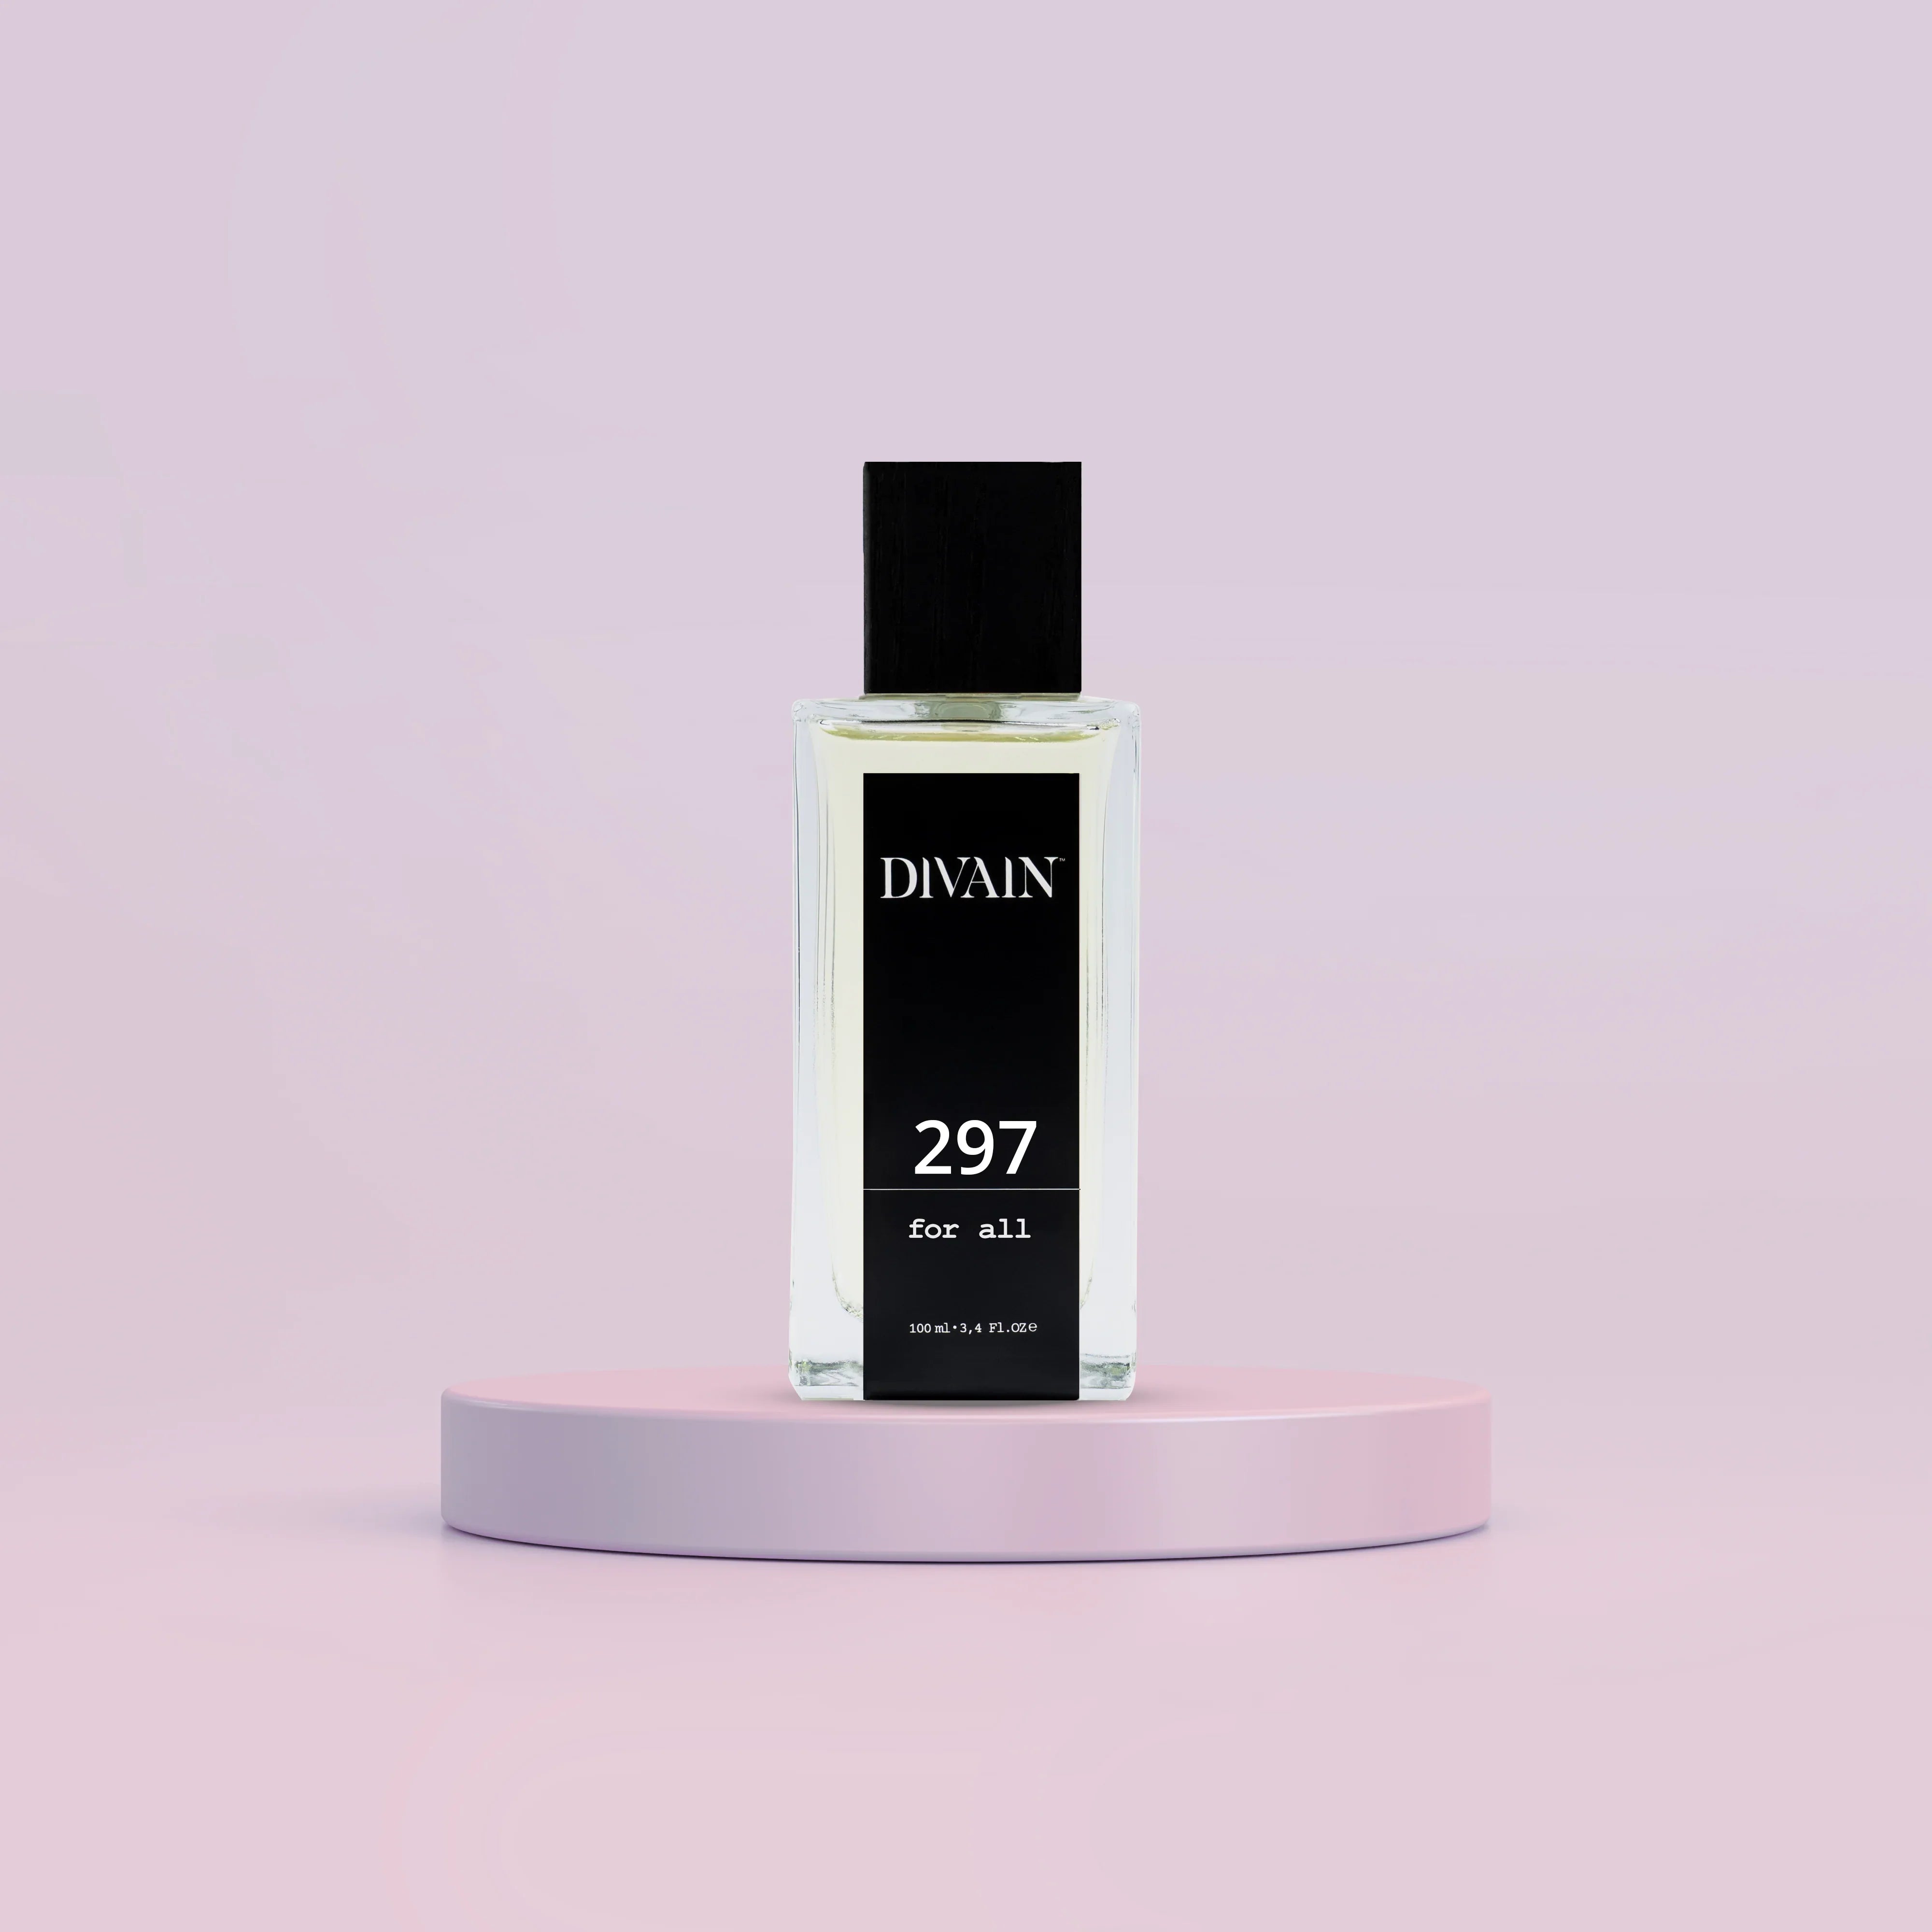 DIVAIN-297 | Similar a Wood Sage & Sea Salt de Jo Malone | Unisex